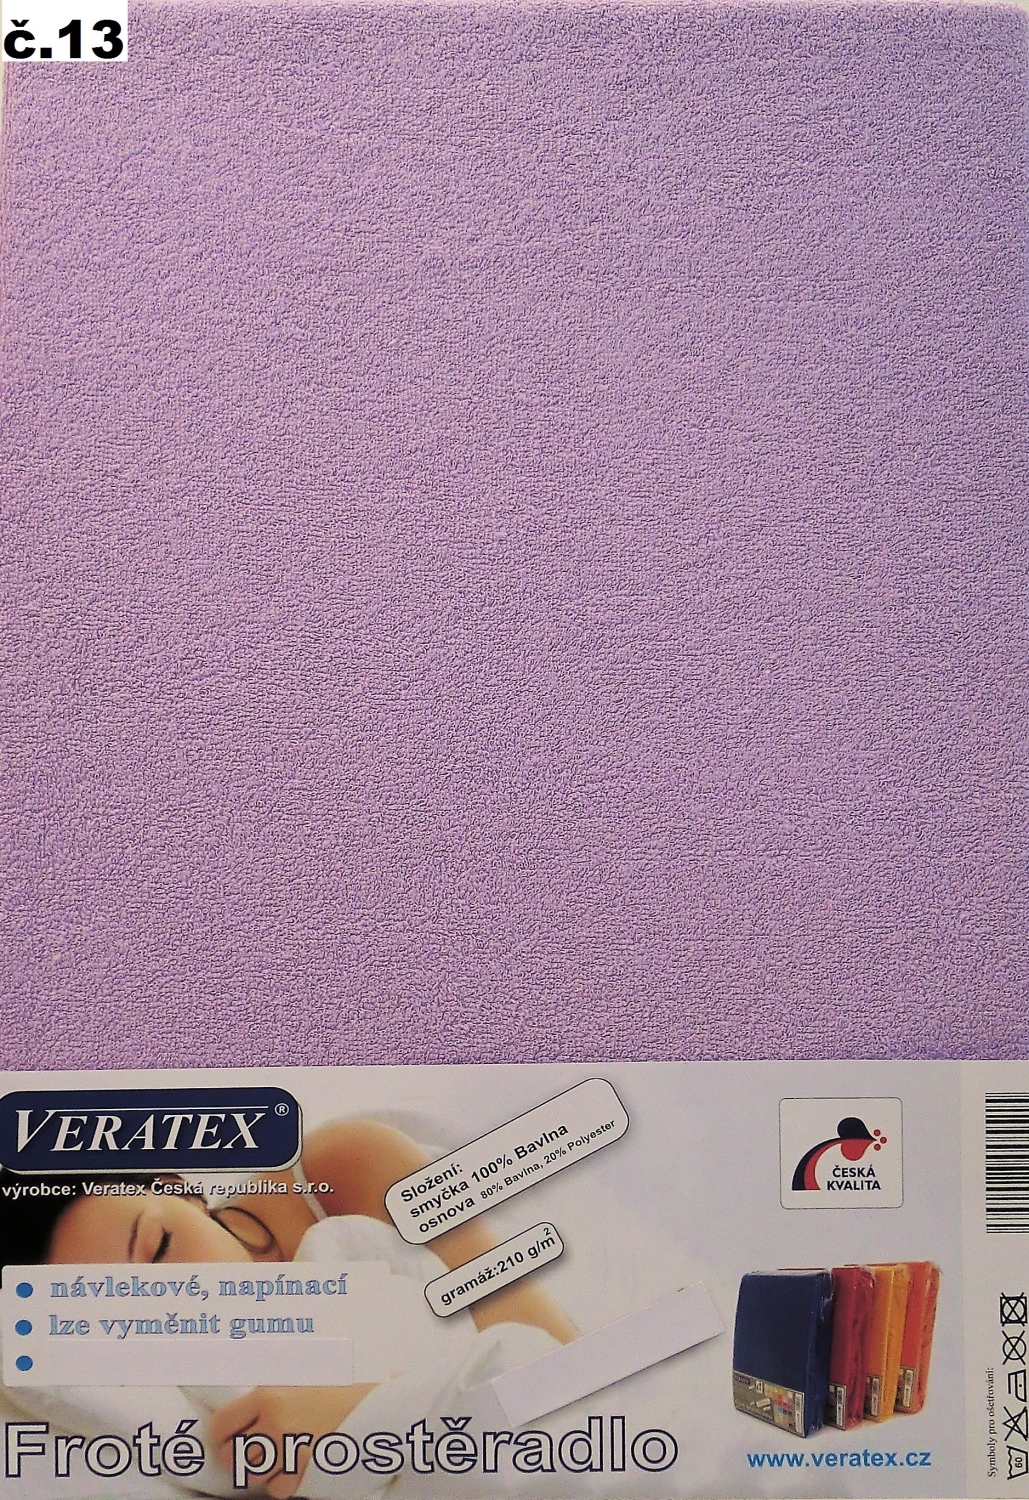 Veratex Froté prostěradlo 100x220/16 cm (č.13-fialková) 100 x 220 cm